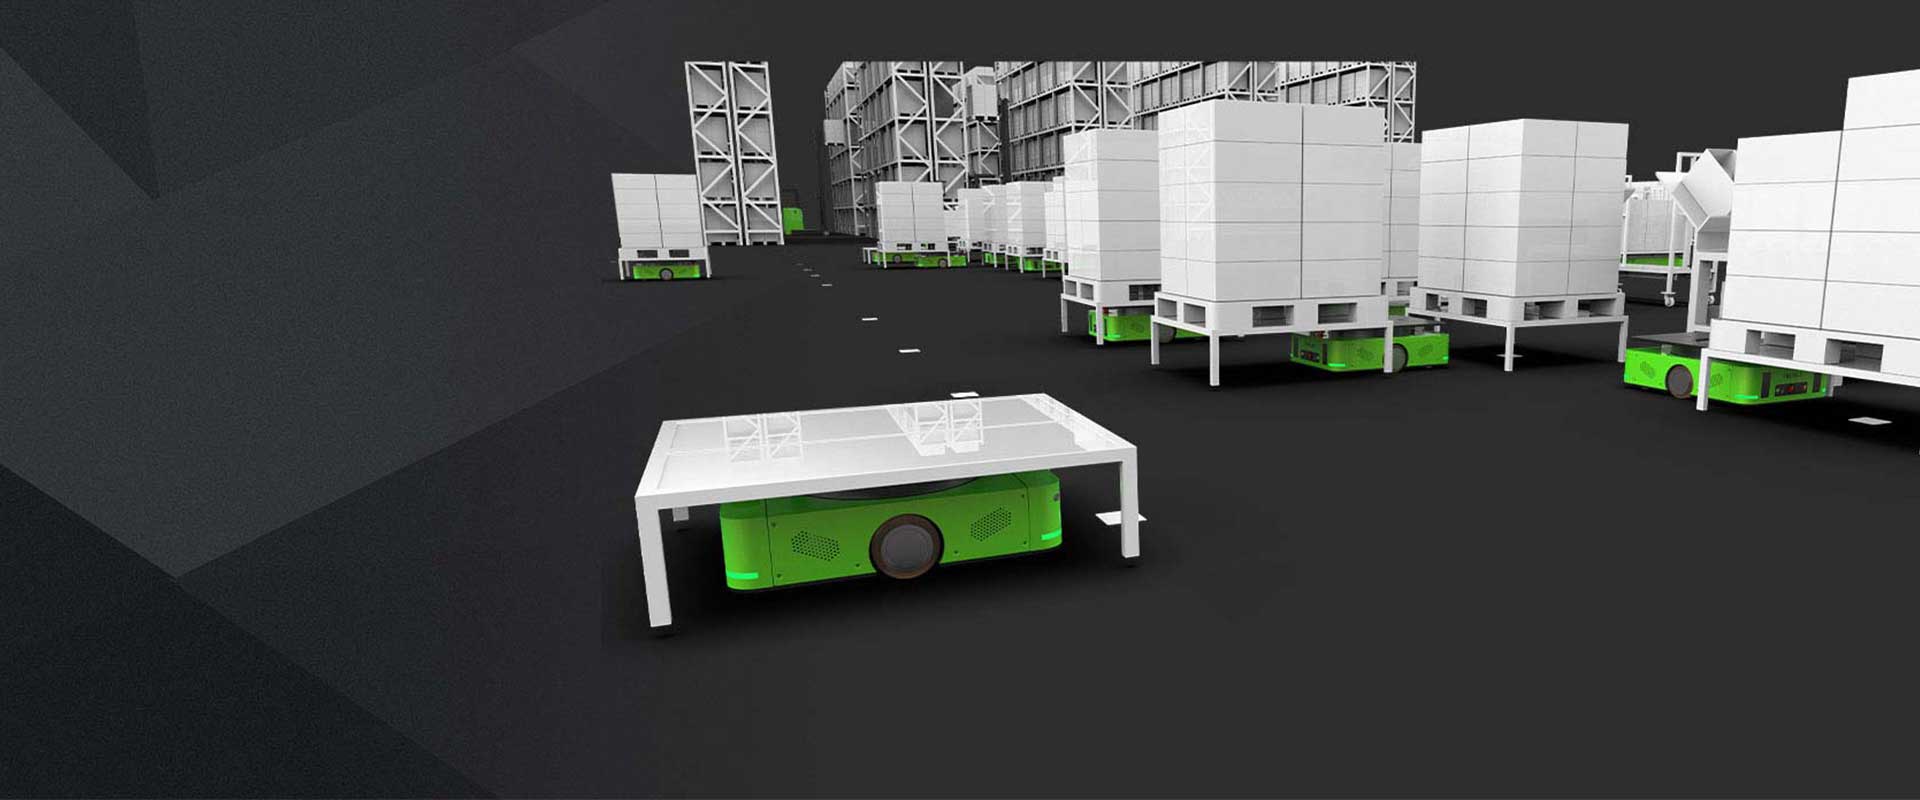 Furniture Industry - Aiyi Intelligent - Jiangsu Pizhou Furniture Materials Transferring Project